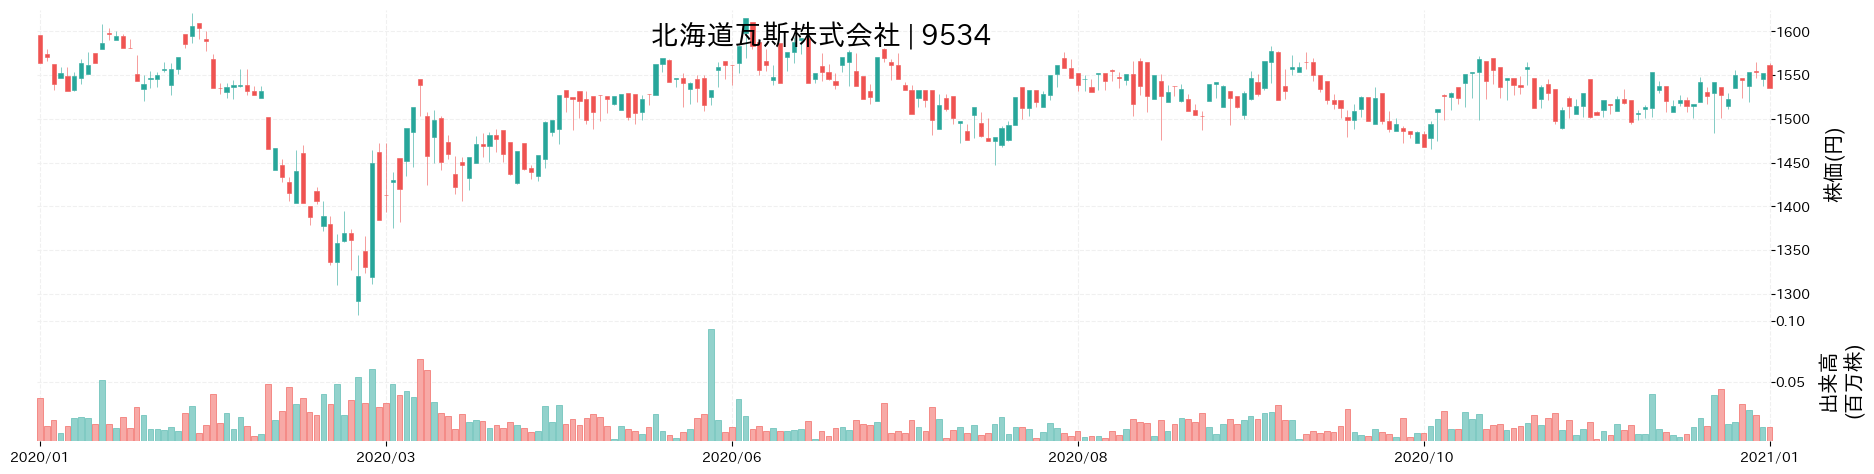 北海道瓦斯の株価推移(2020)